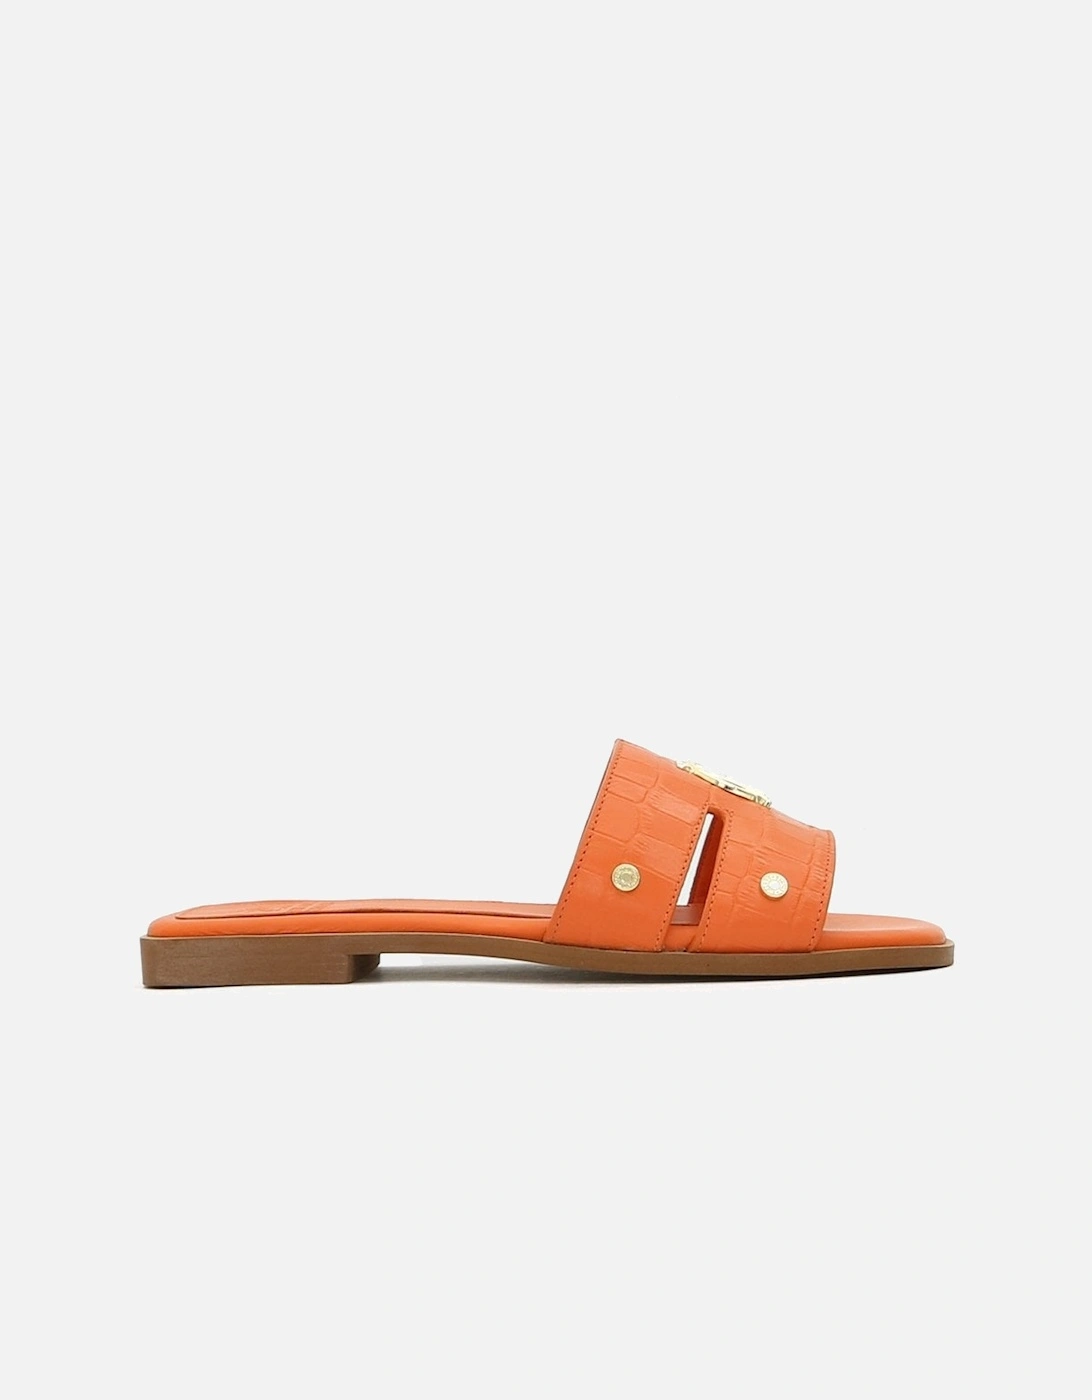 Monogram Croc Orange Slides